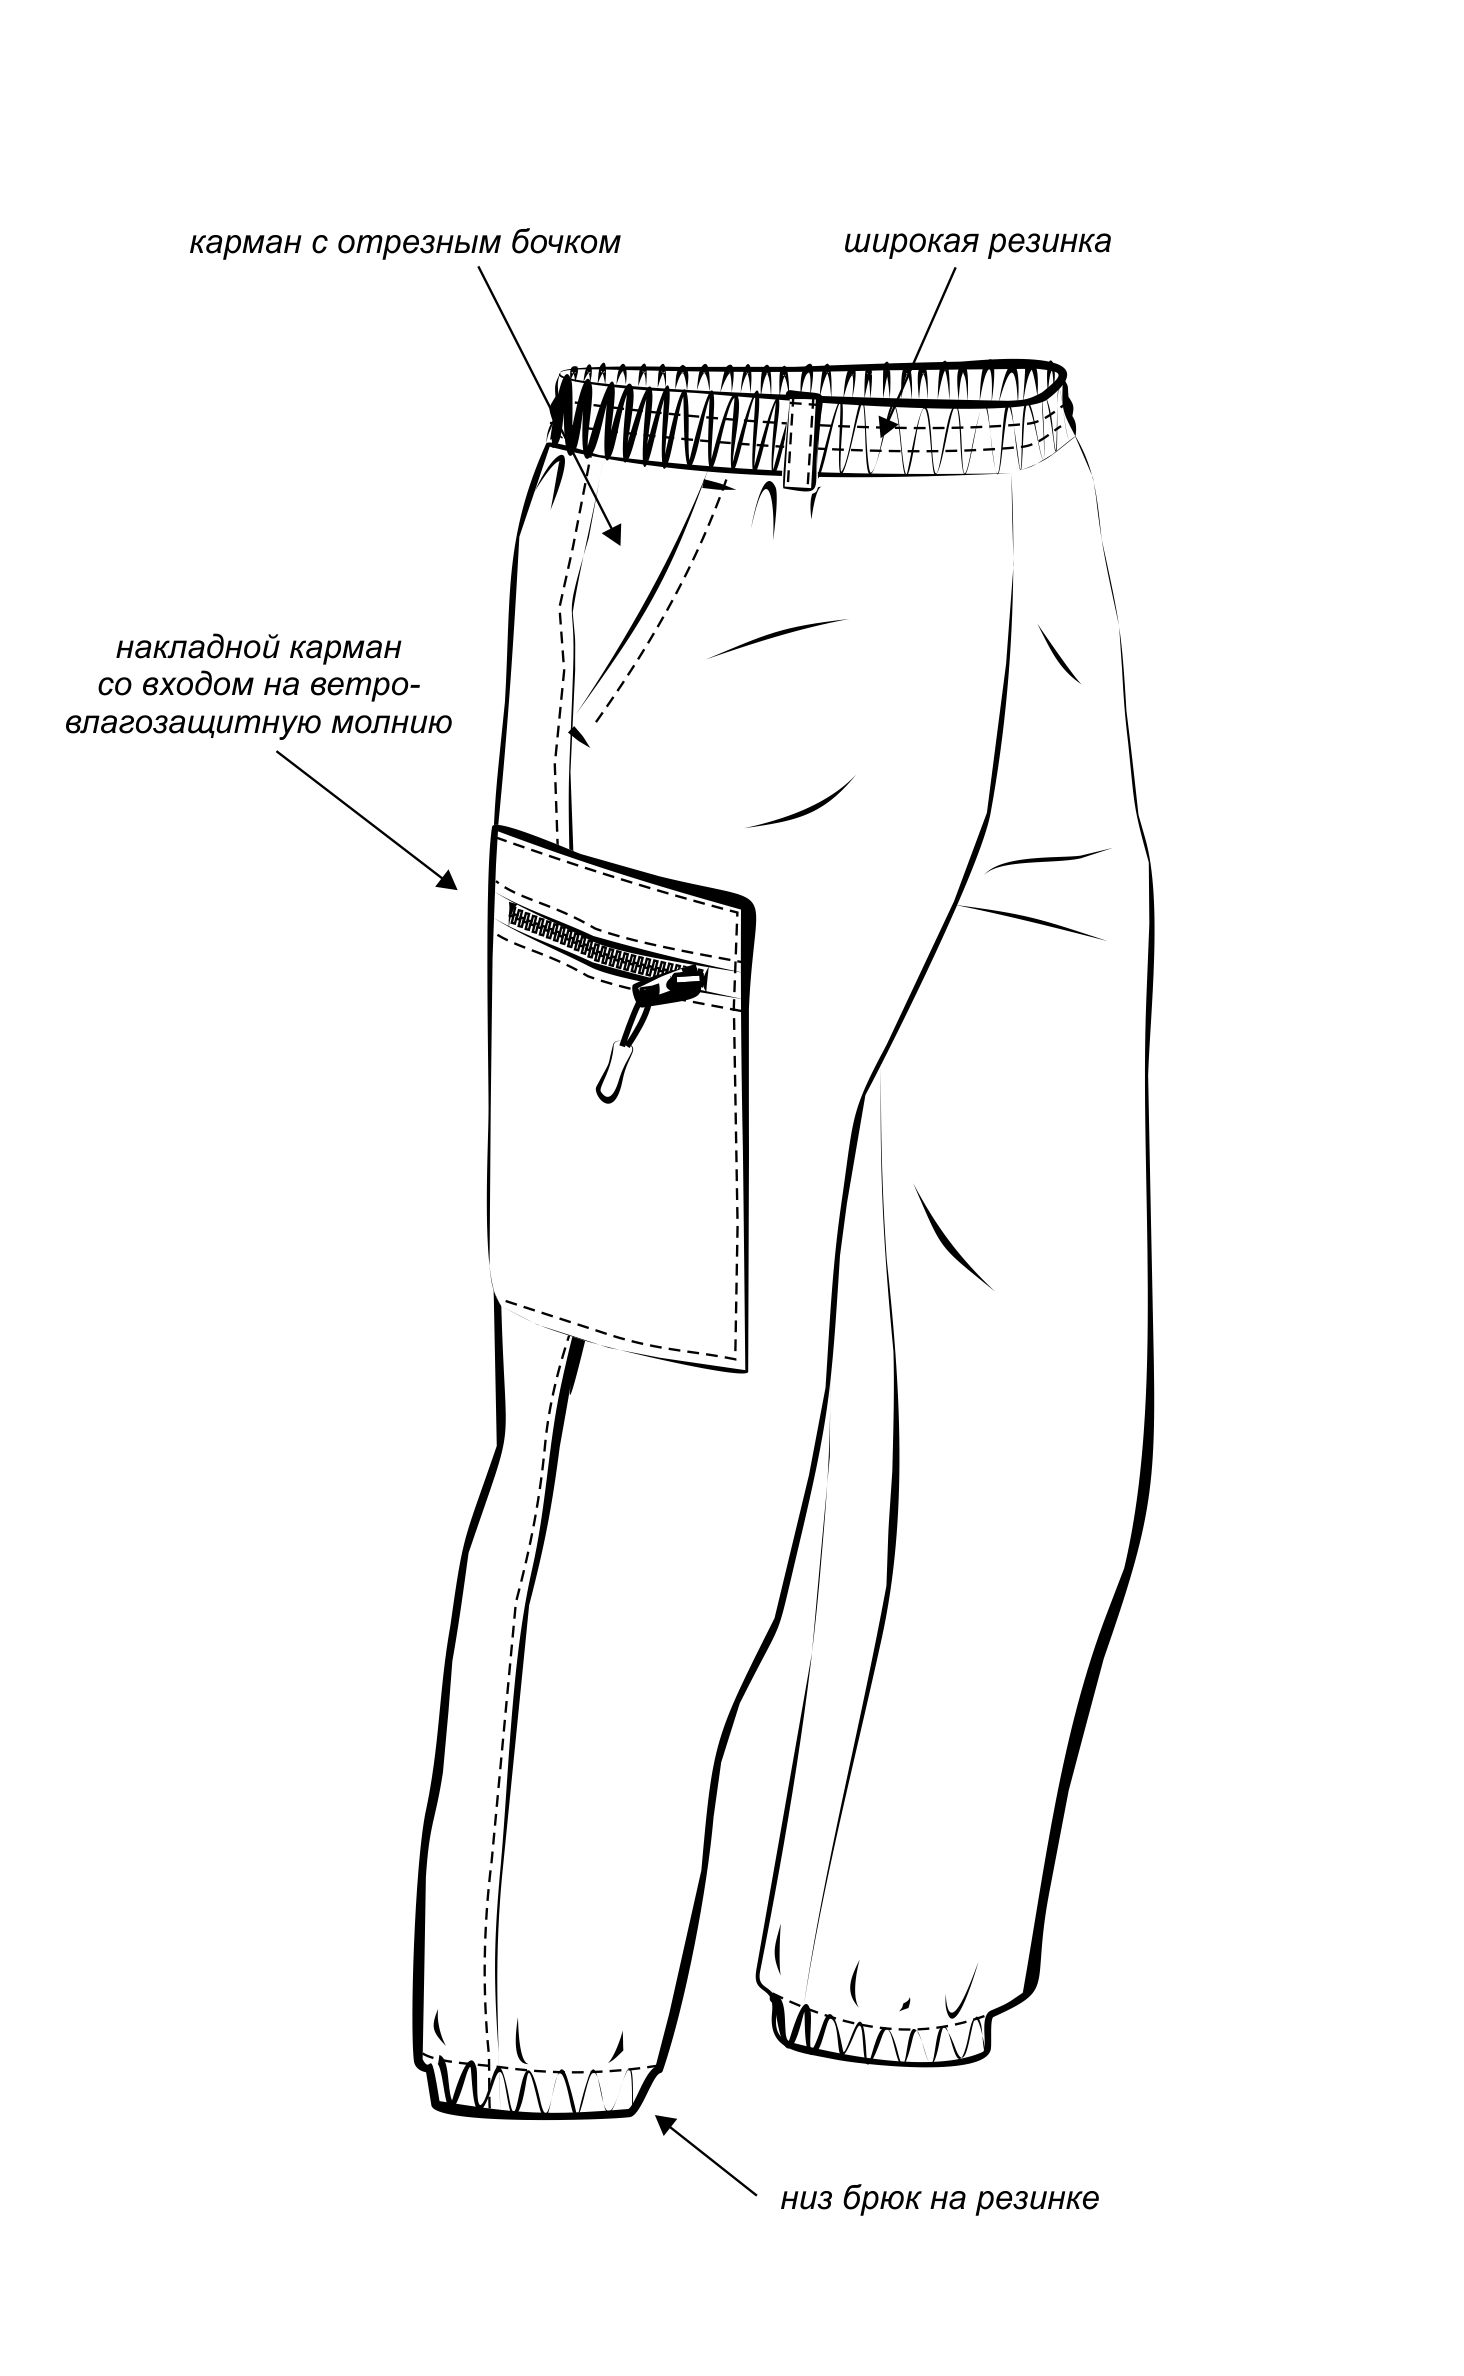 Костюм "ТУРИСТ 1" куртка/брюки цвет: камуфляж "Колючка зеленый", ткань: Грета